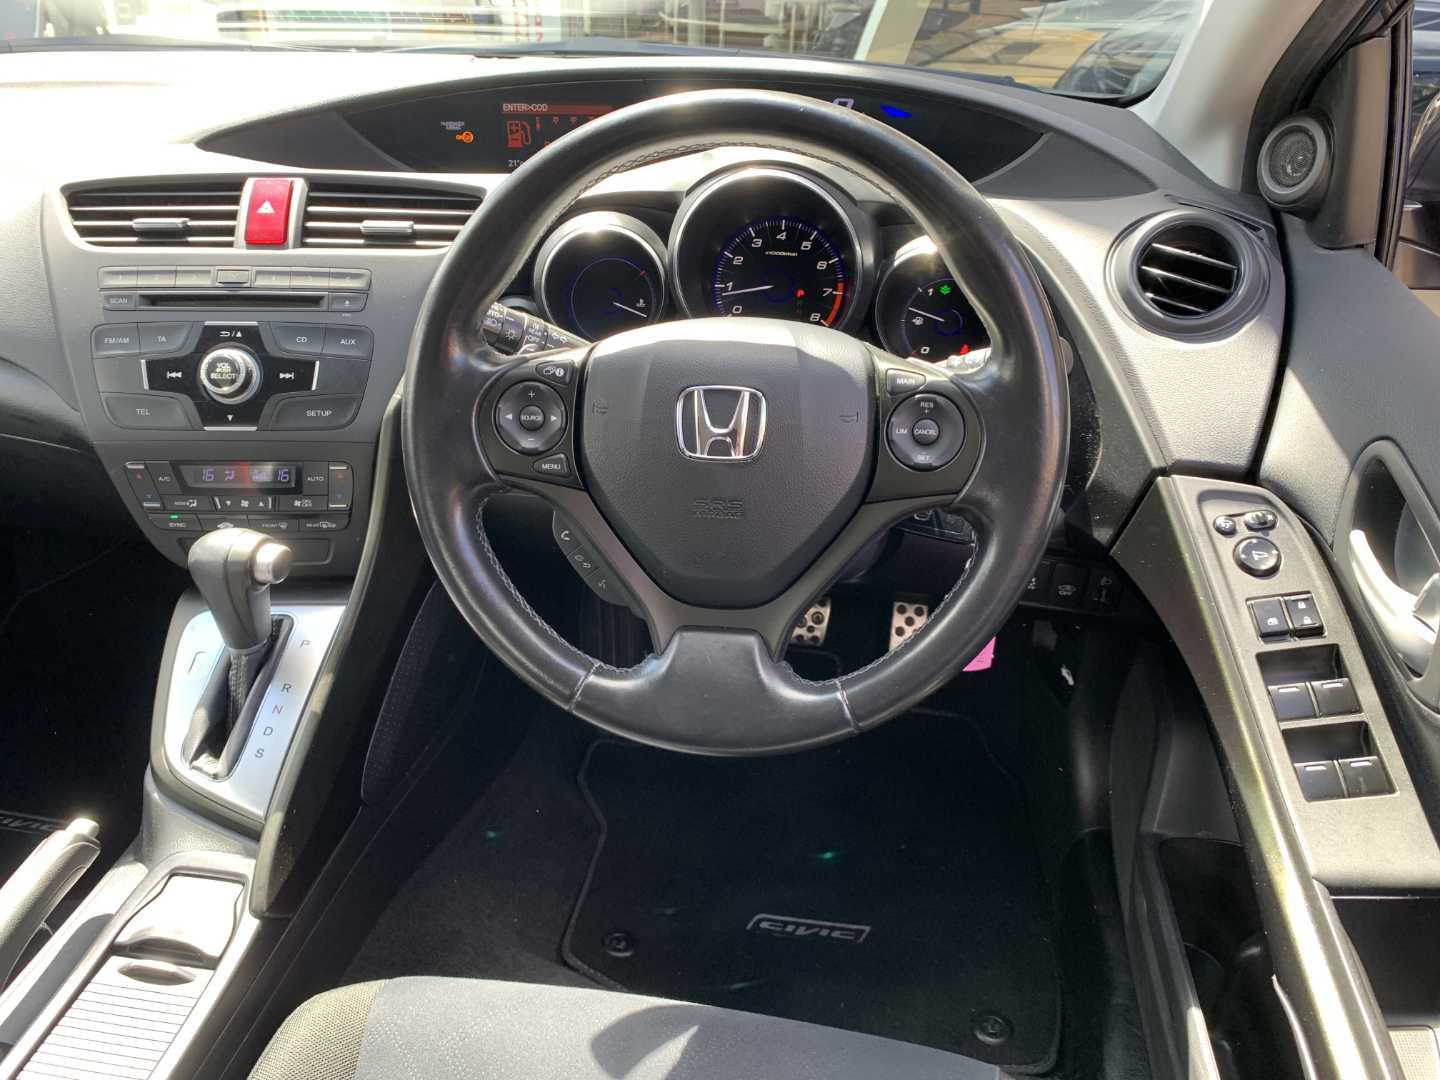 Honda CIVIC 1.8 i-VTEC ES 5dr Auto - Image 16